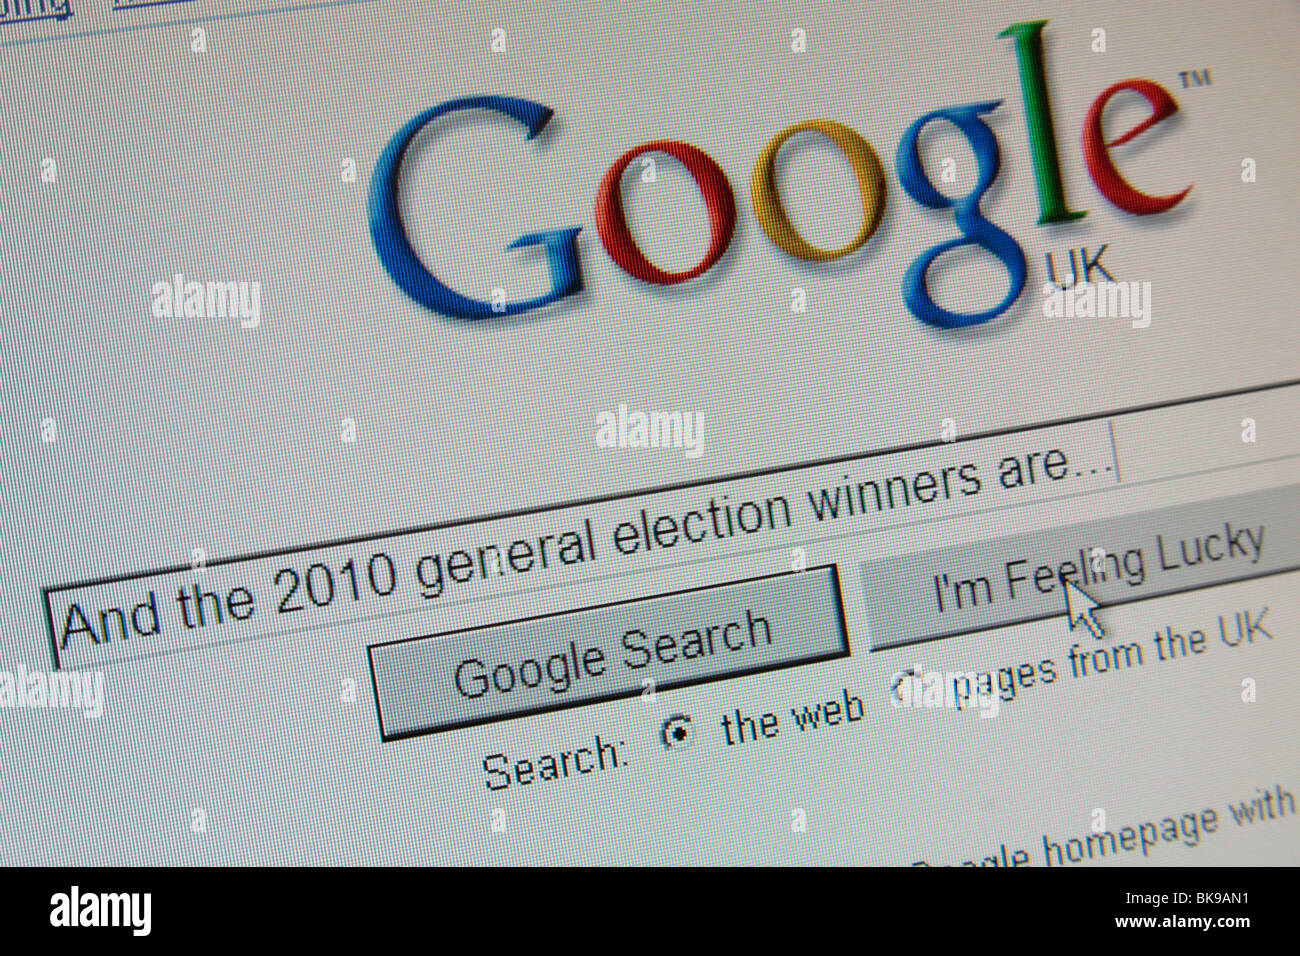 Google Ricerca " e il 2010 elezioni generali i vincitori sono...") con il tasto cursore su "Mi sento fortunato' Foto Stock